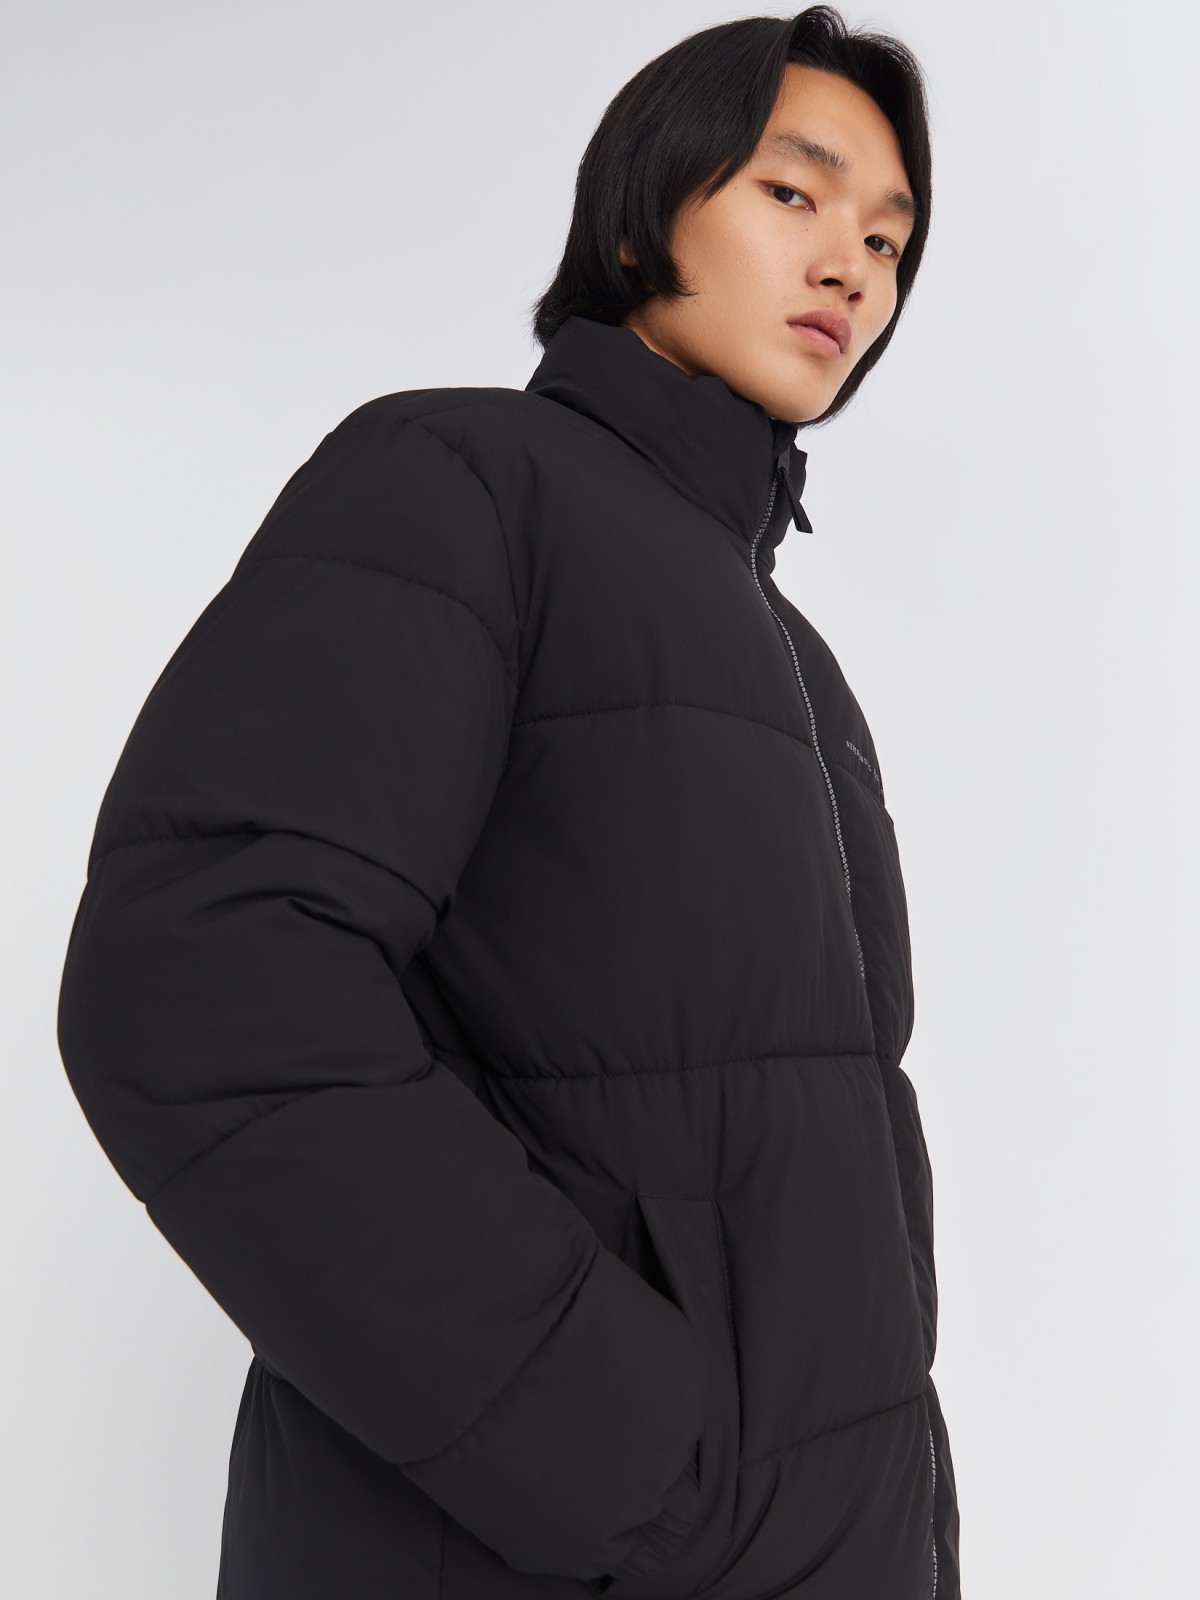 Тёплая стёганая куртка на молнии с воротником-стойкой zolla 01334510L134, цвет черный, размер S - фото 3